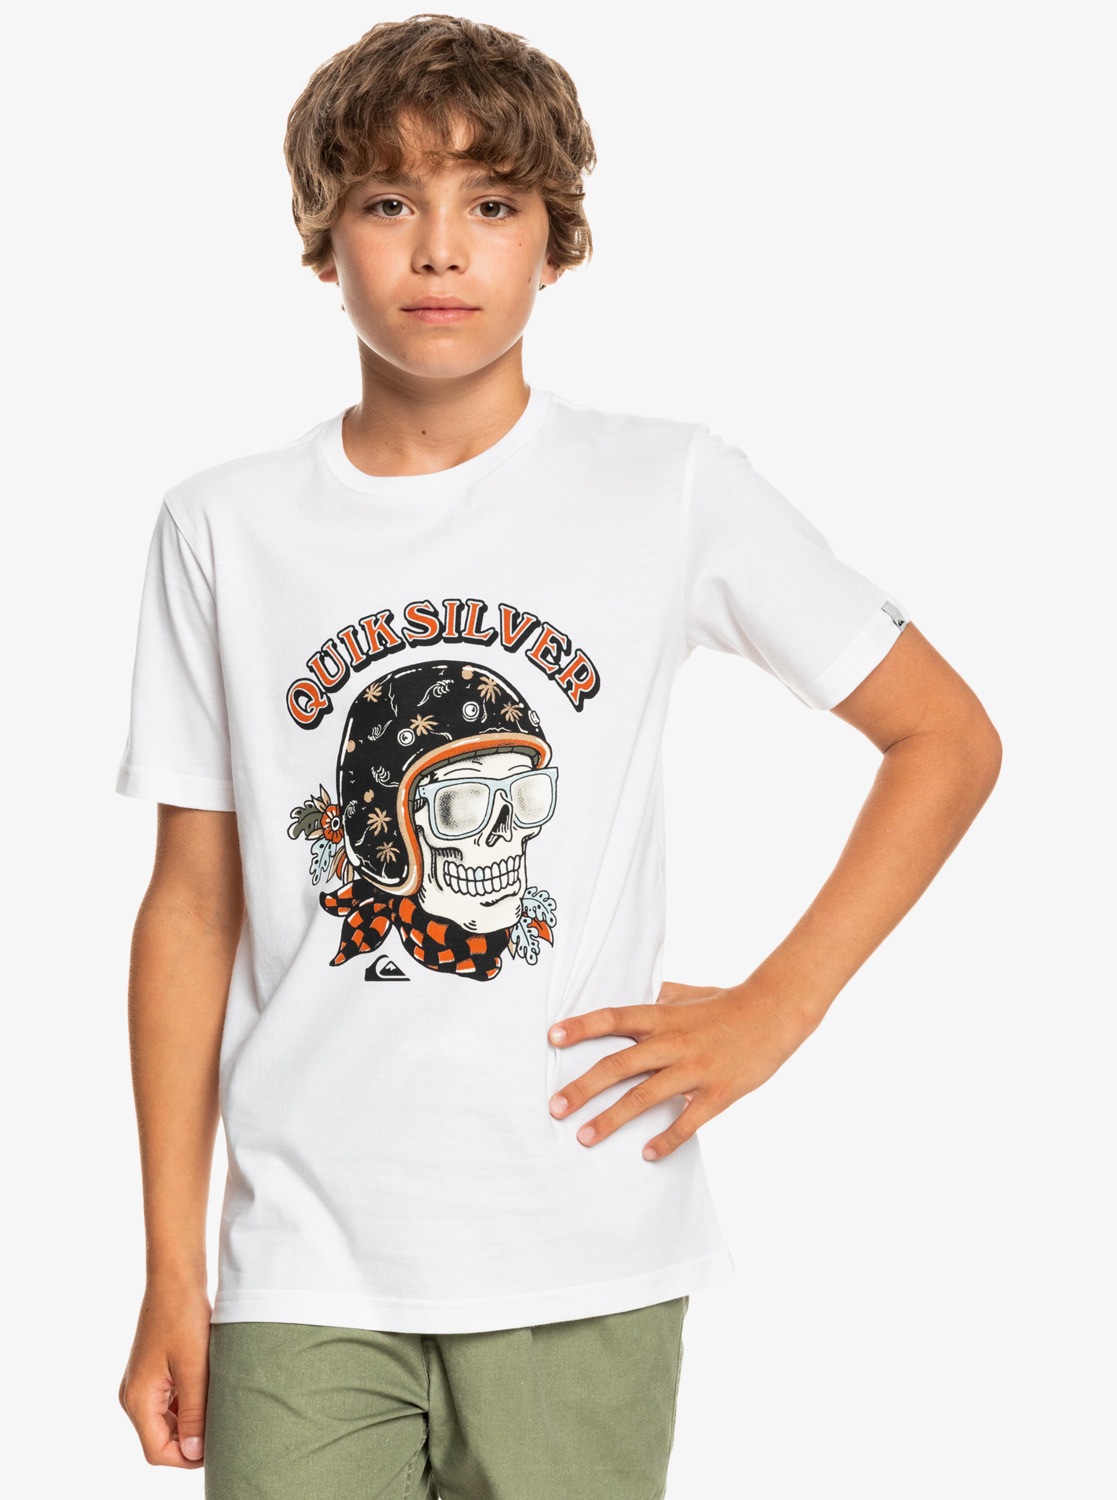 Quiksilver T-Shirt »Skull Trooper« von Quiksilver